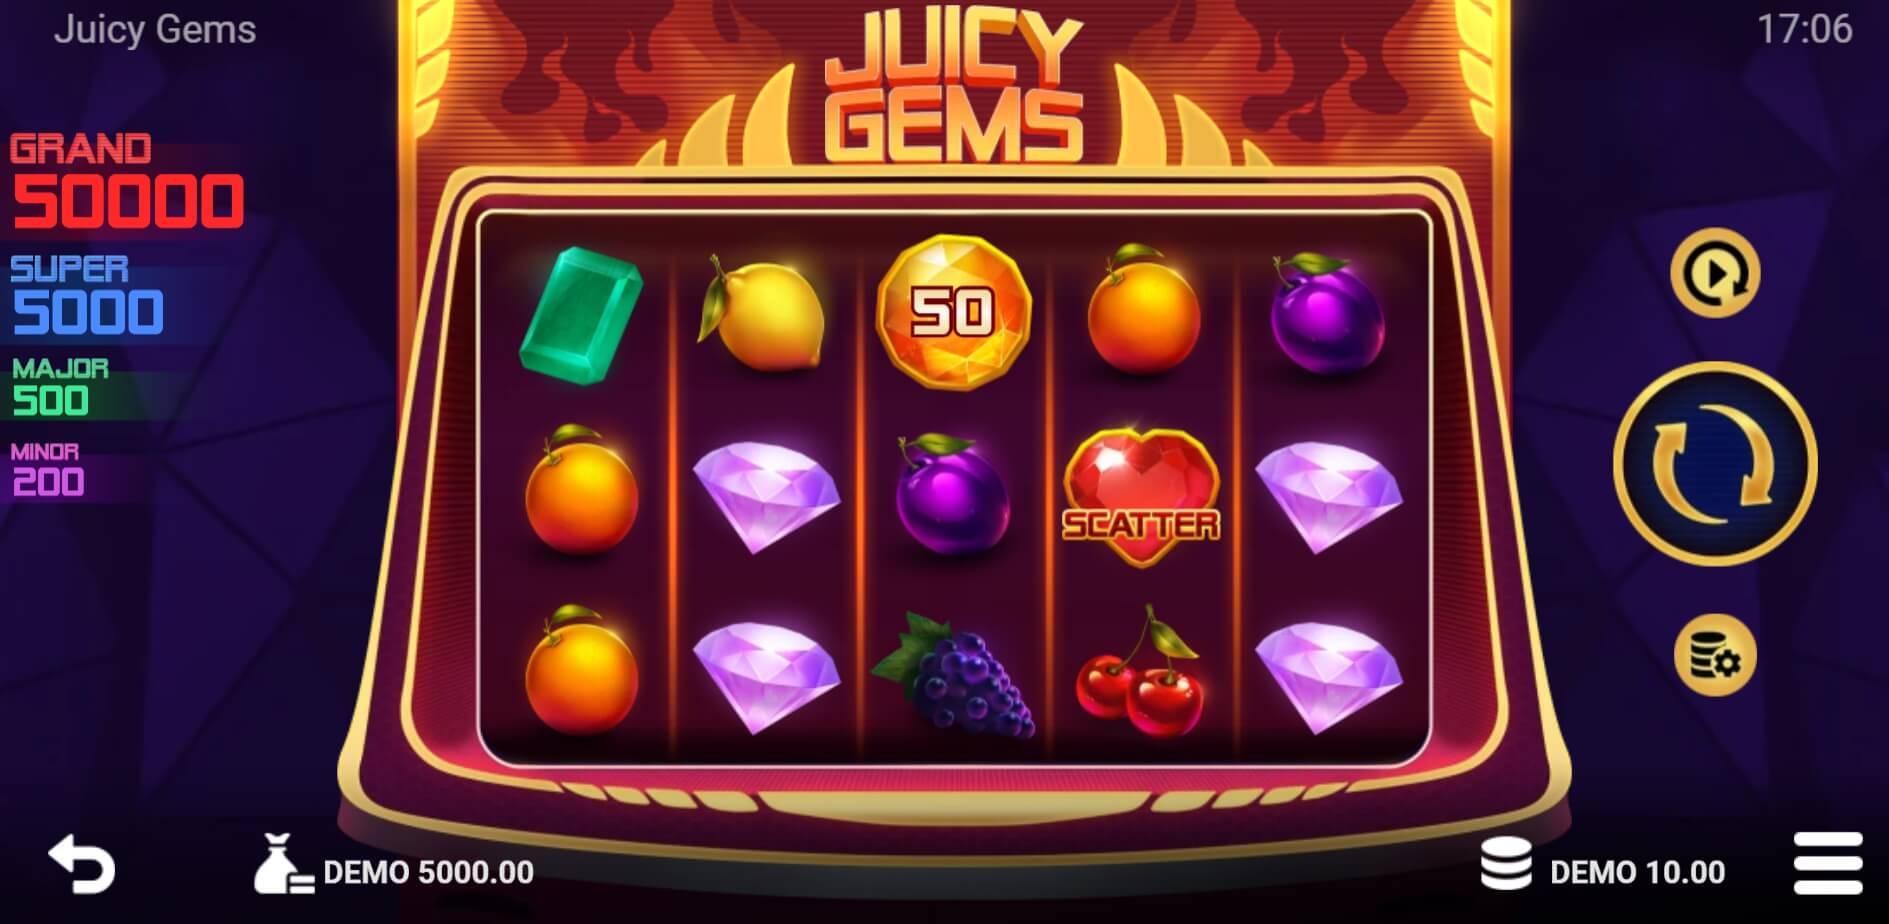 Juicy Gems Evo Play ซุปเปอร์สล็อต ใหม่ล่าสุด